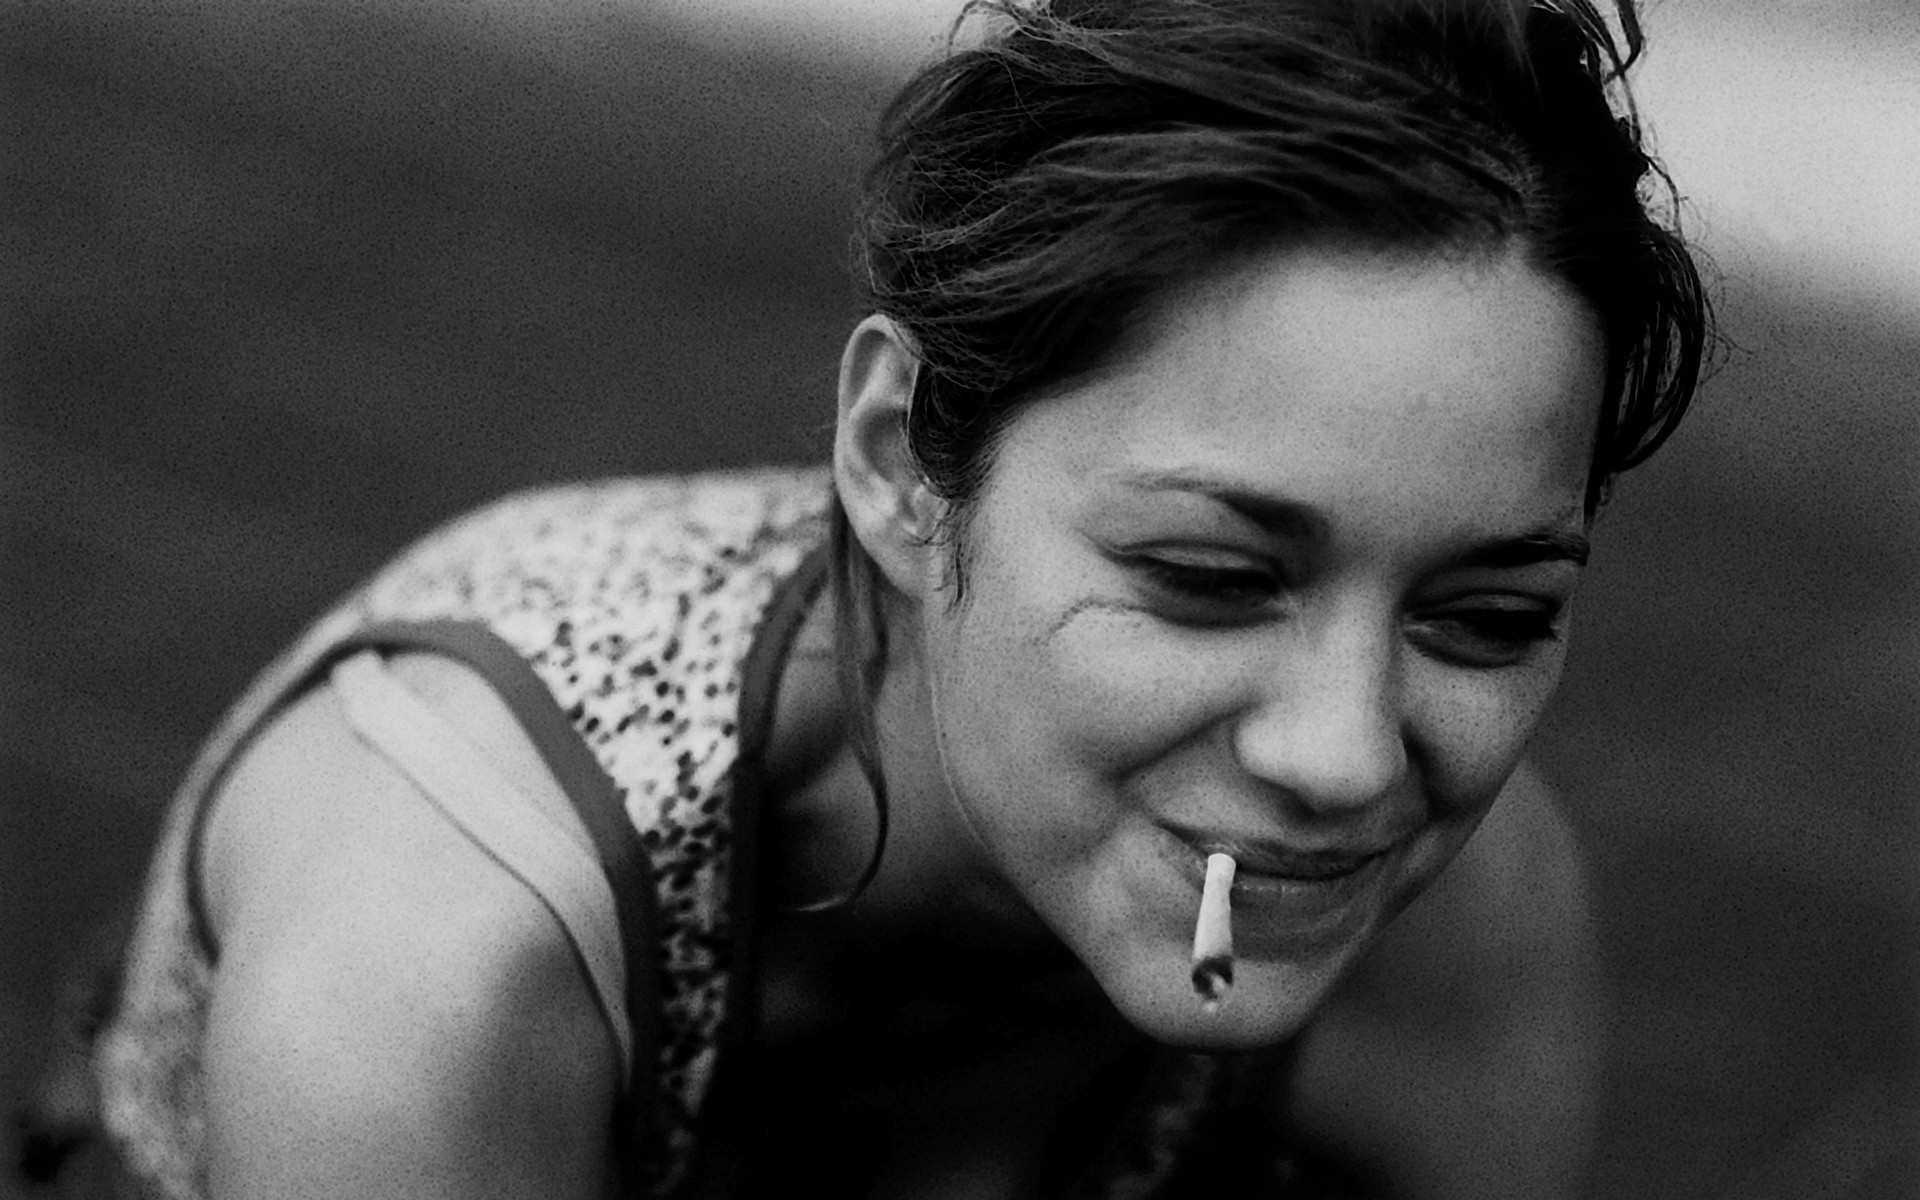 Marion Cotillard raucht einer Zigarette (oder Cannabis)
